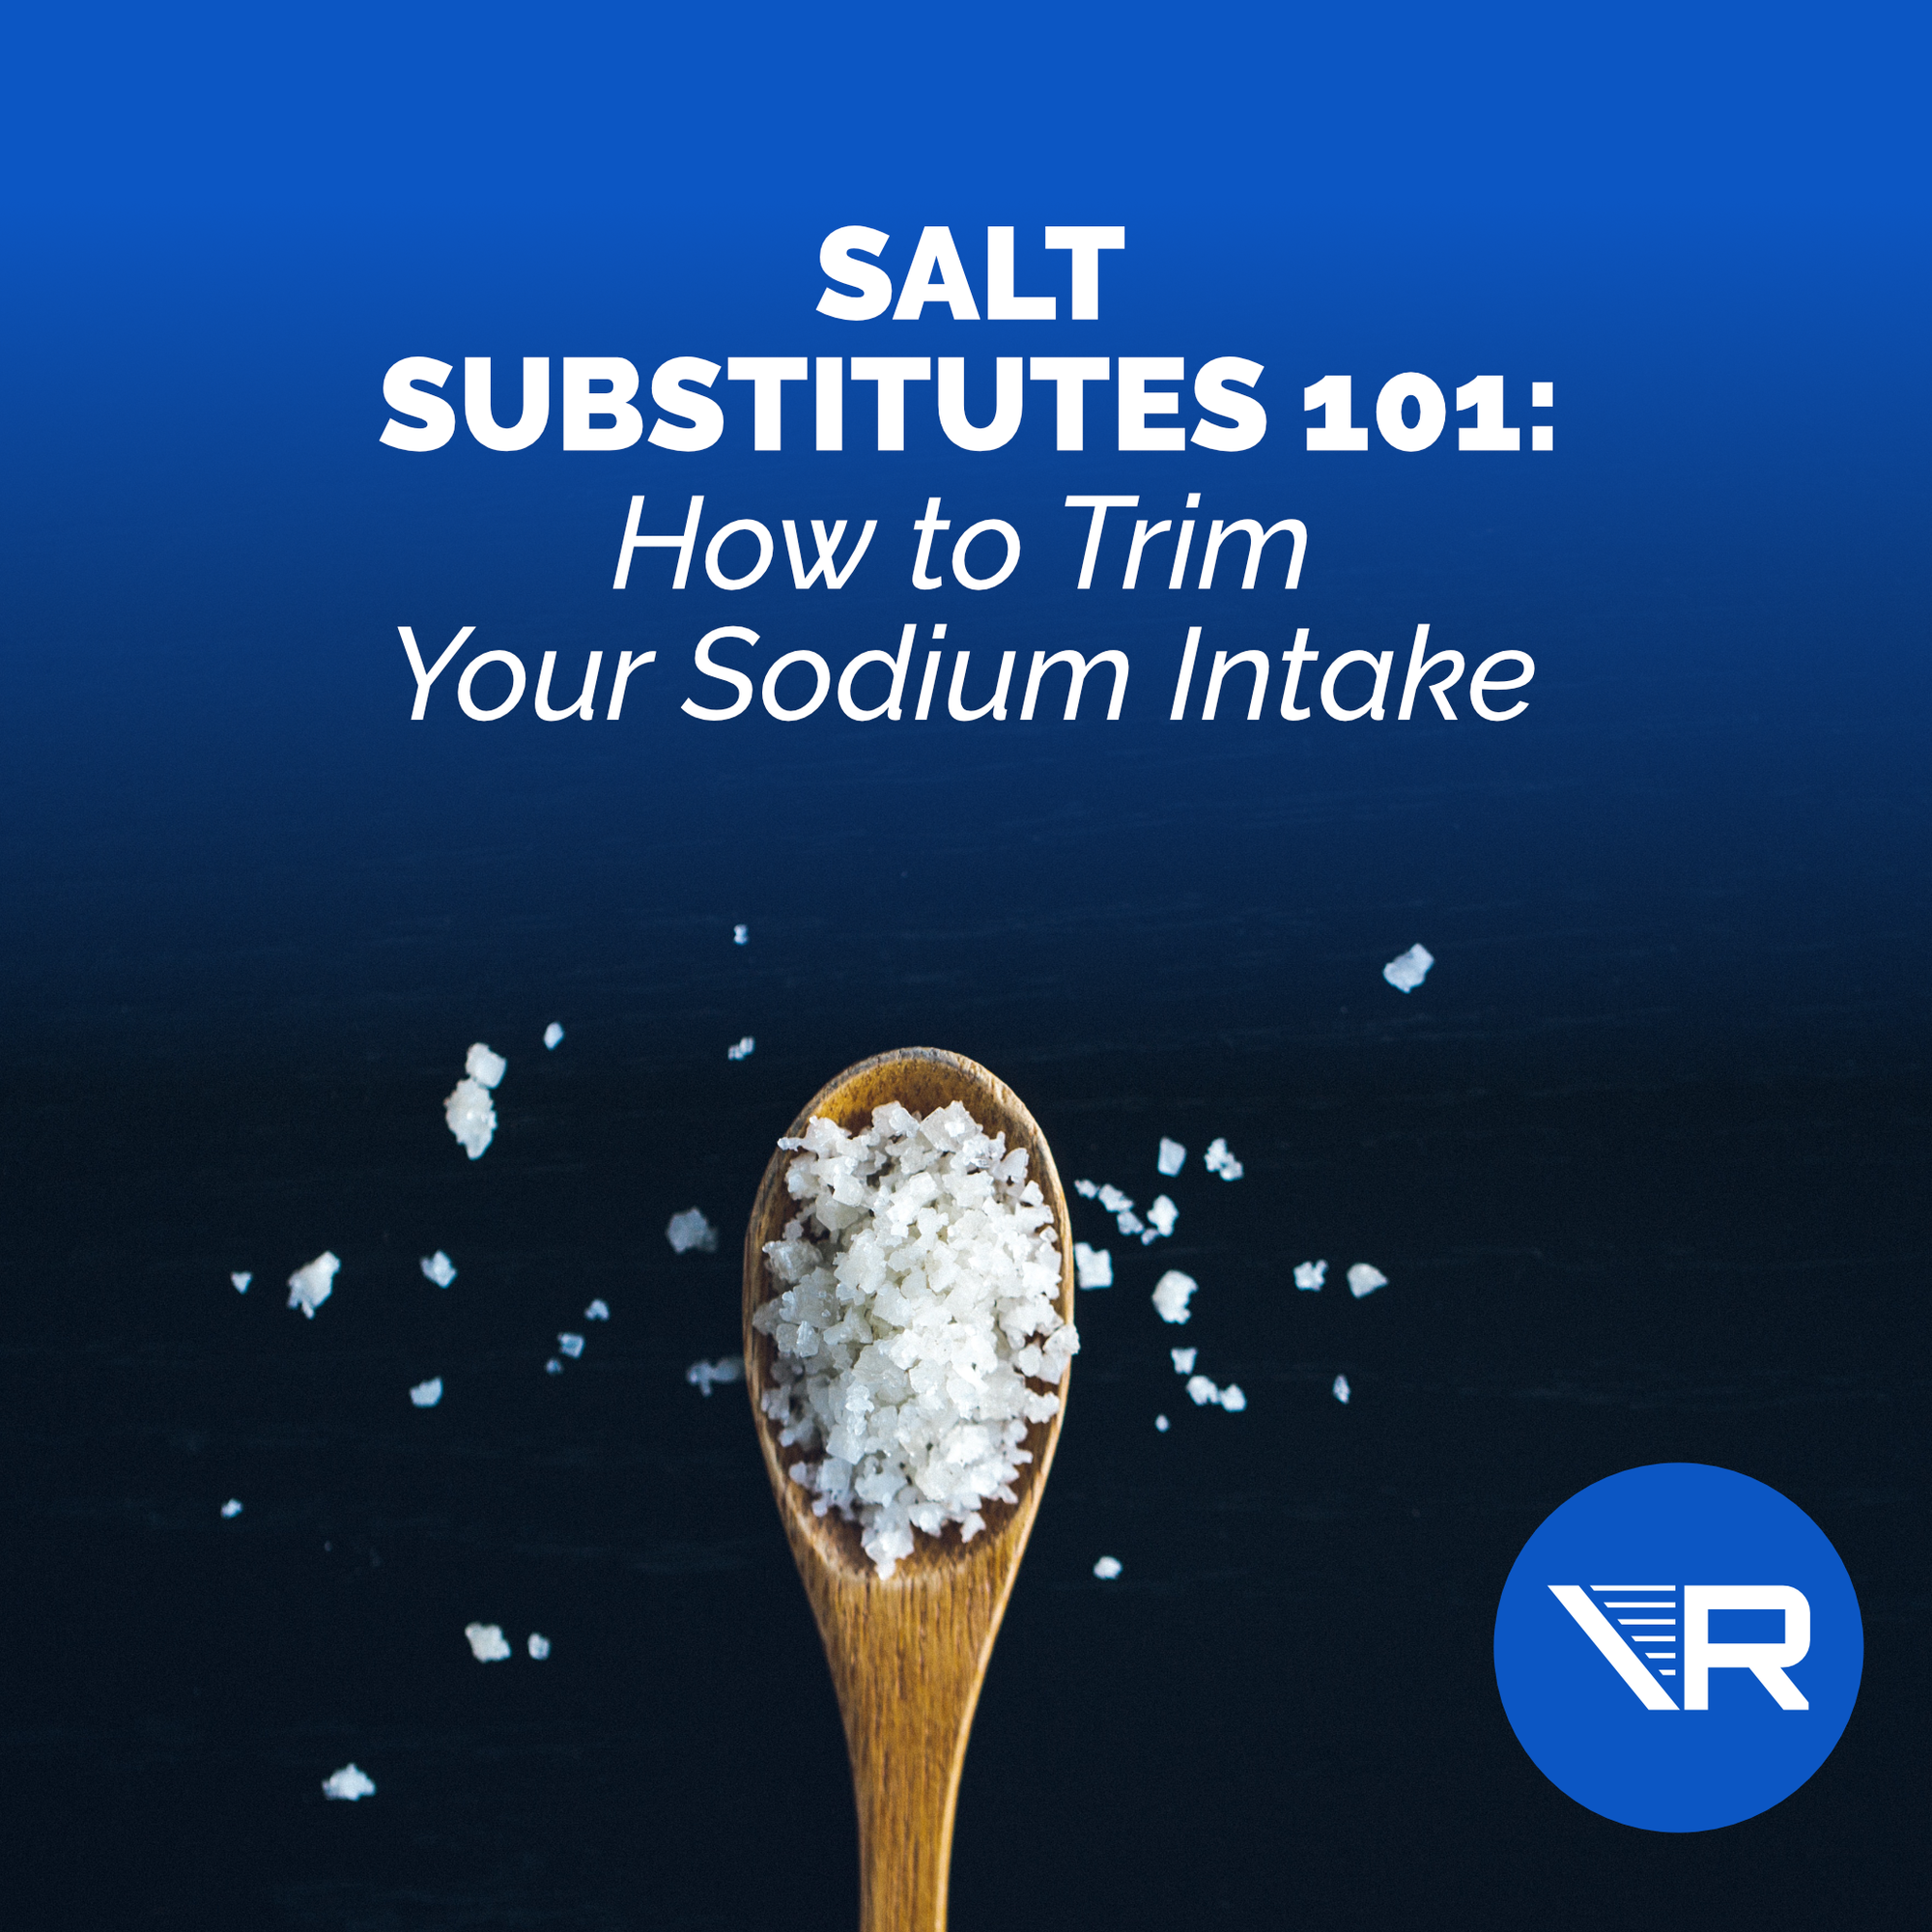 Salt substitutes